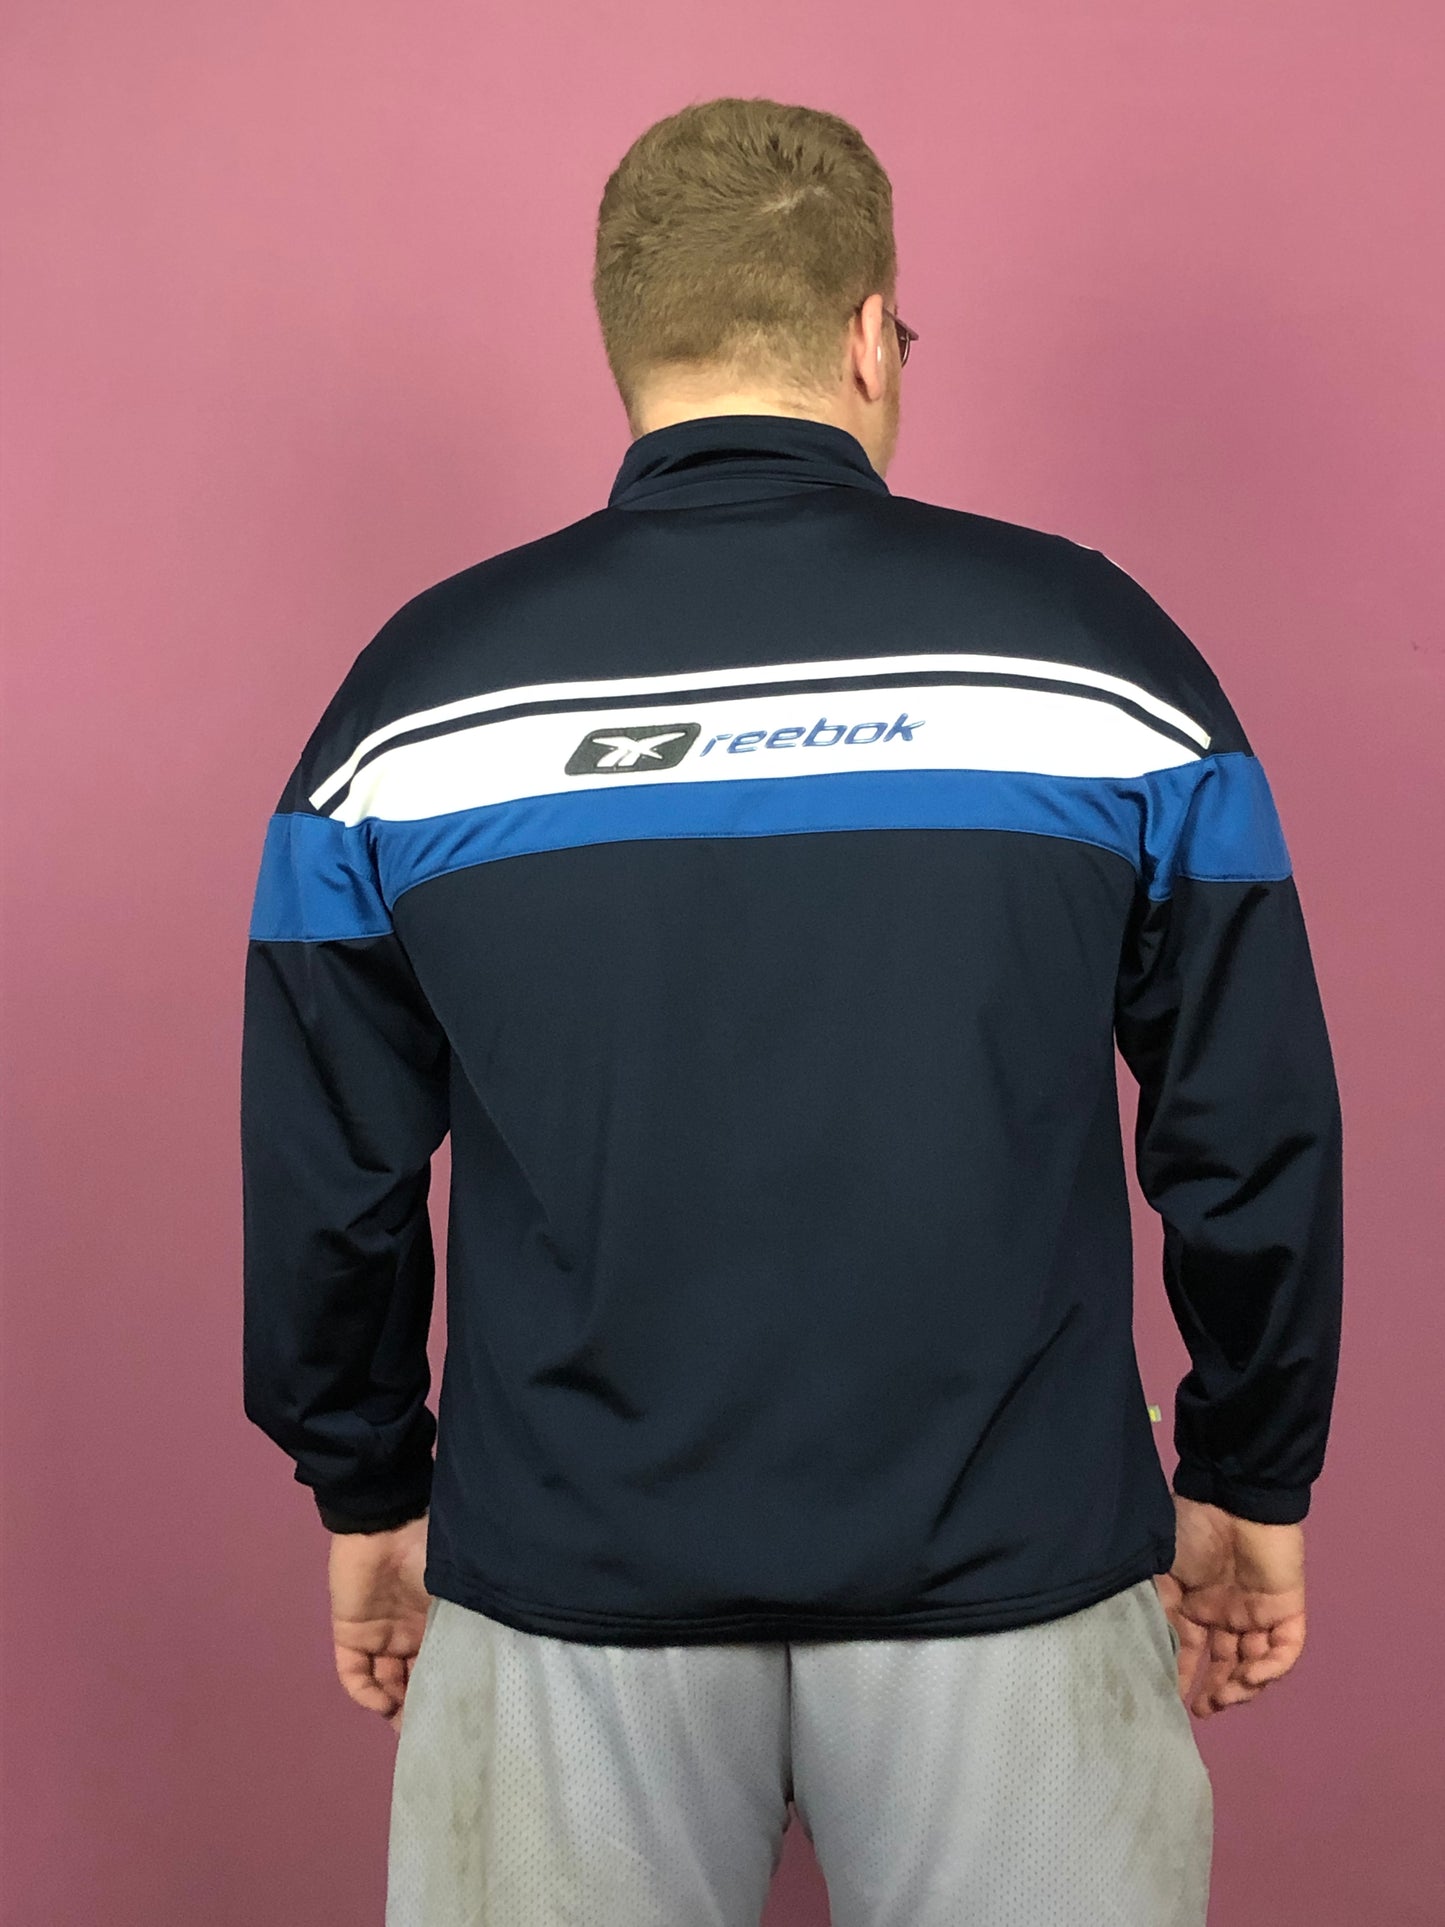 Reebok Vintage Men's Track Jacket - XL Navy Blue Polyester